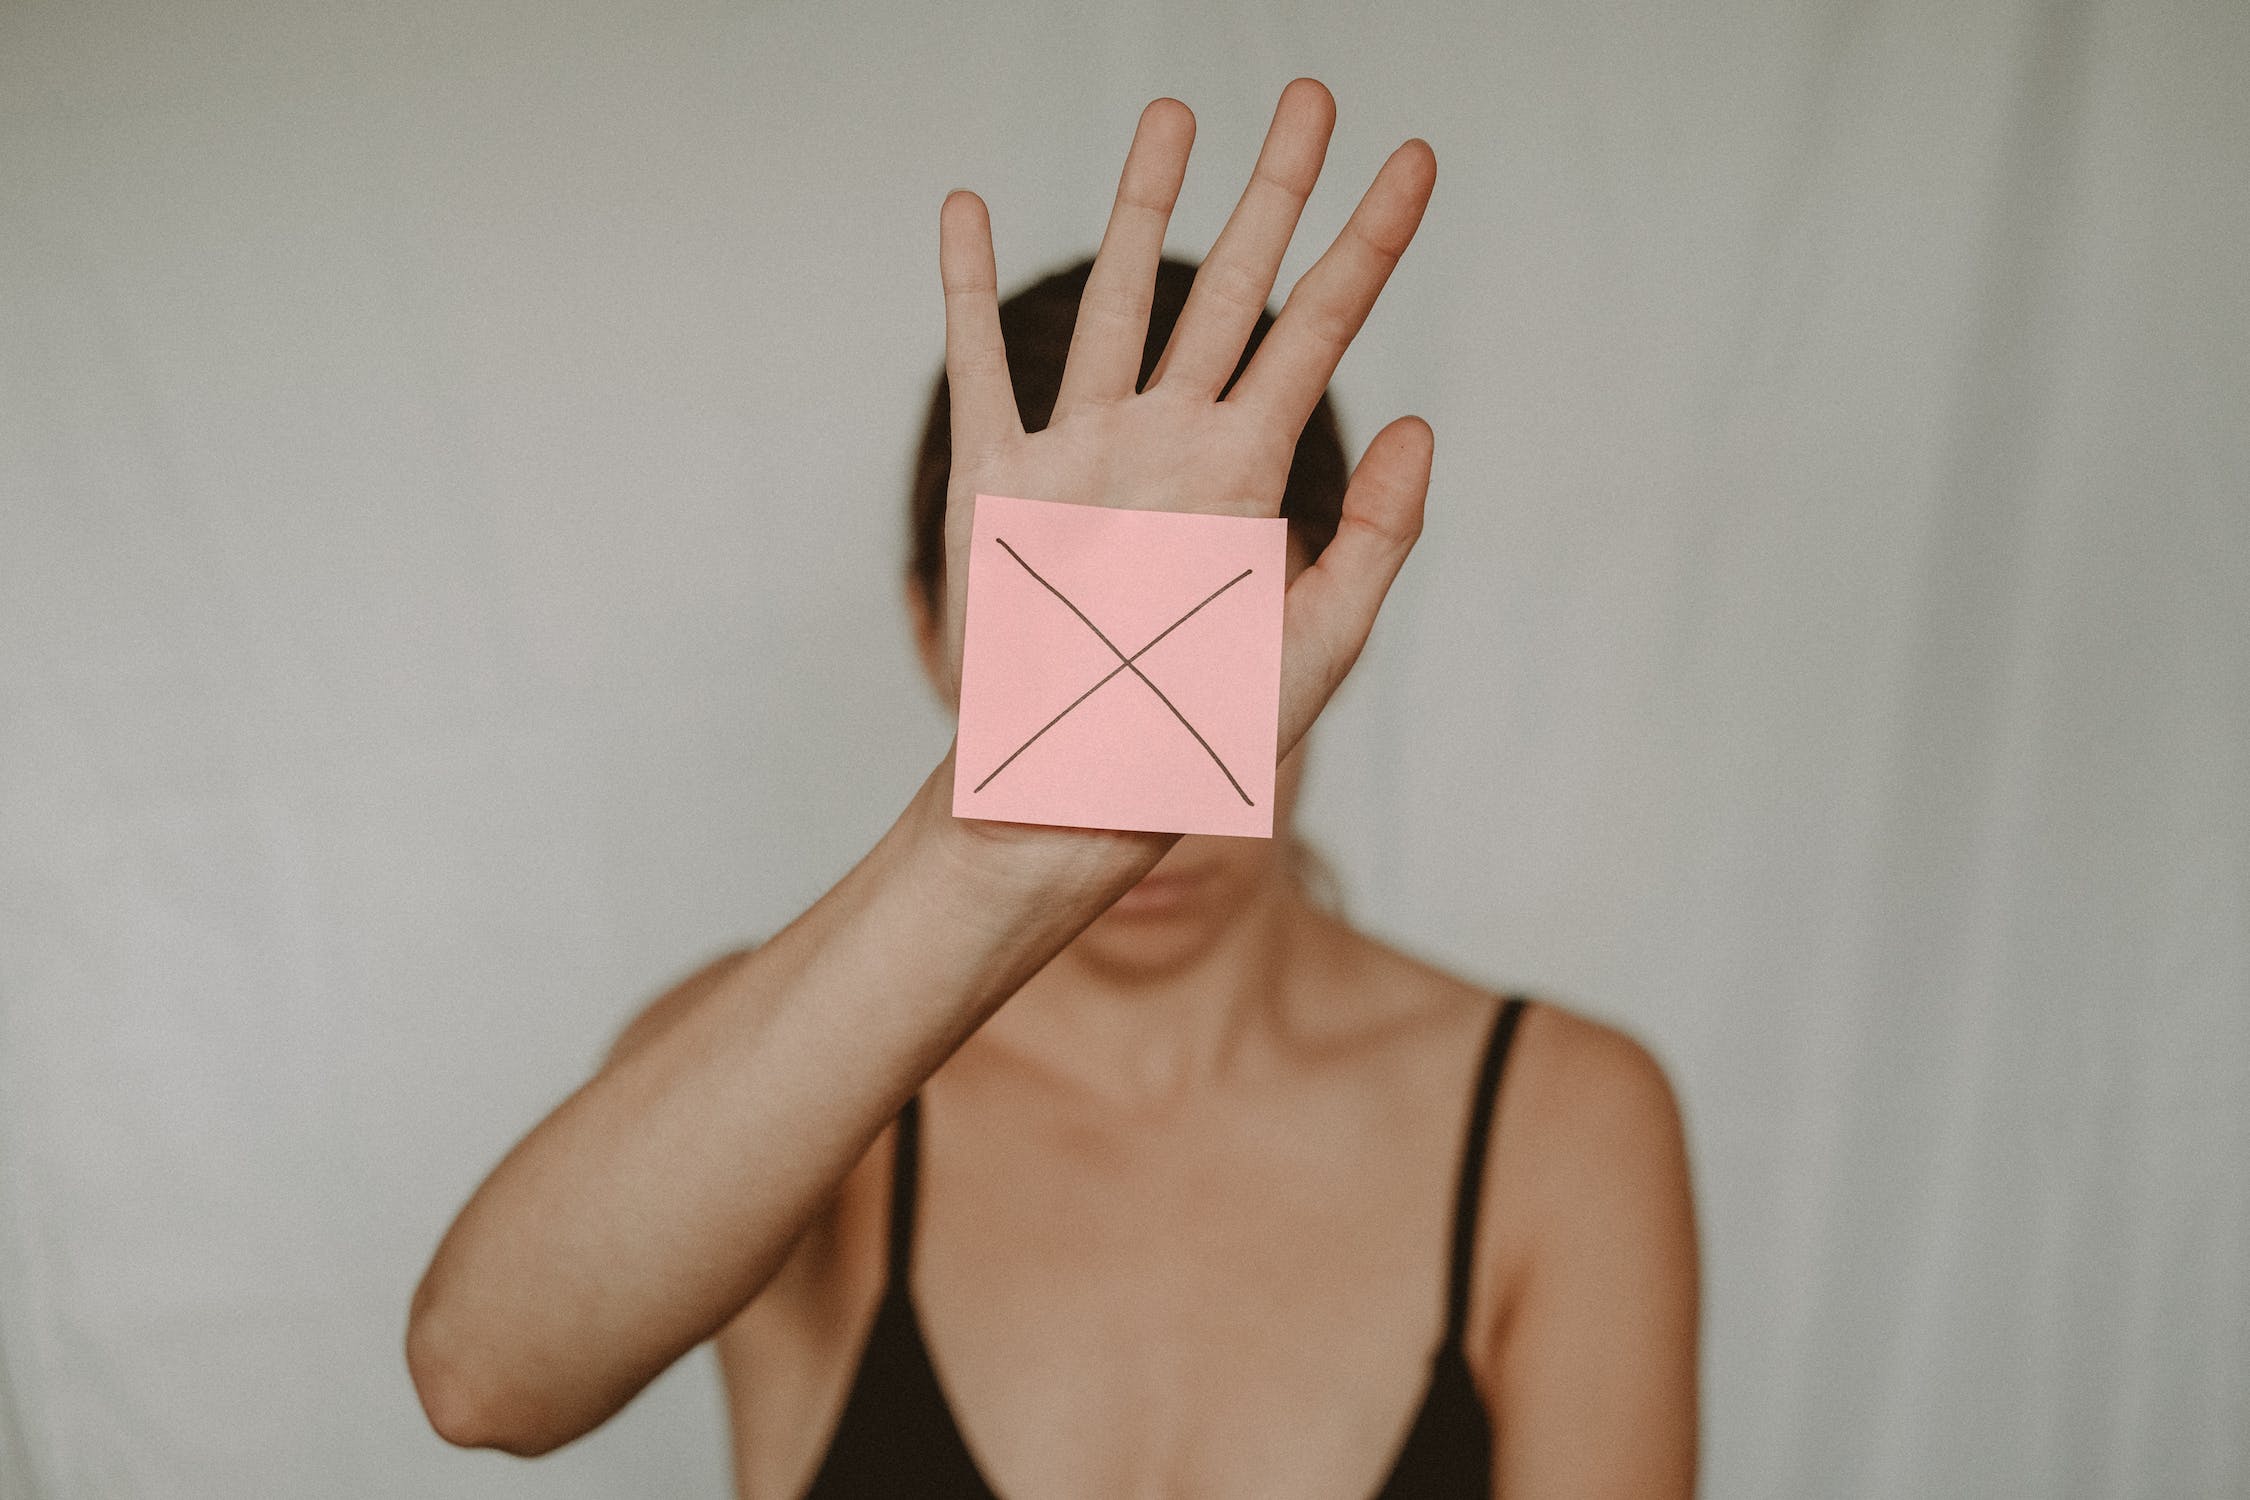 한 여자가 분홍색 포스트잇에 엑스를 그어 보여주고 있다.